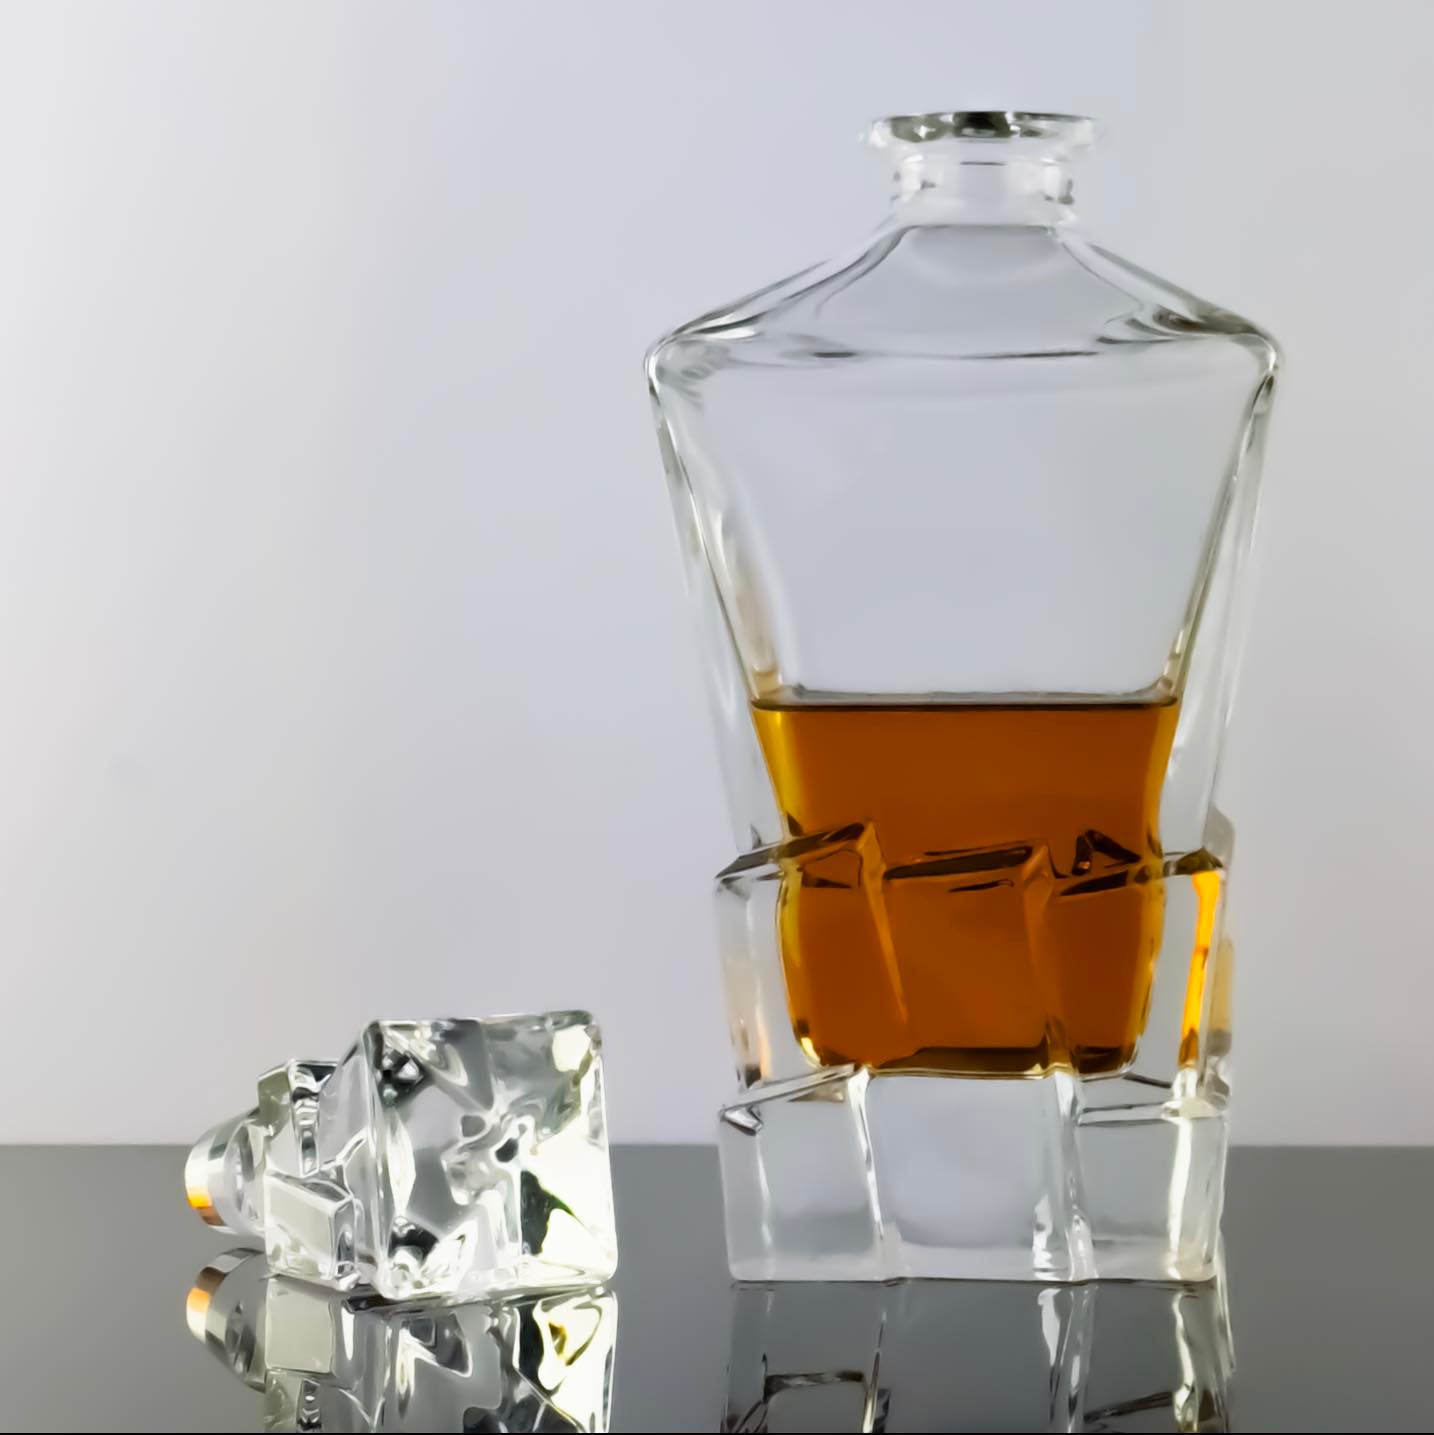 Rock Bottom Whisky Decanter and 4 Glass Set - Solkatt Designs 